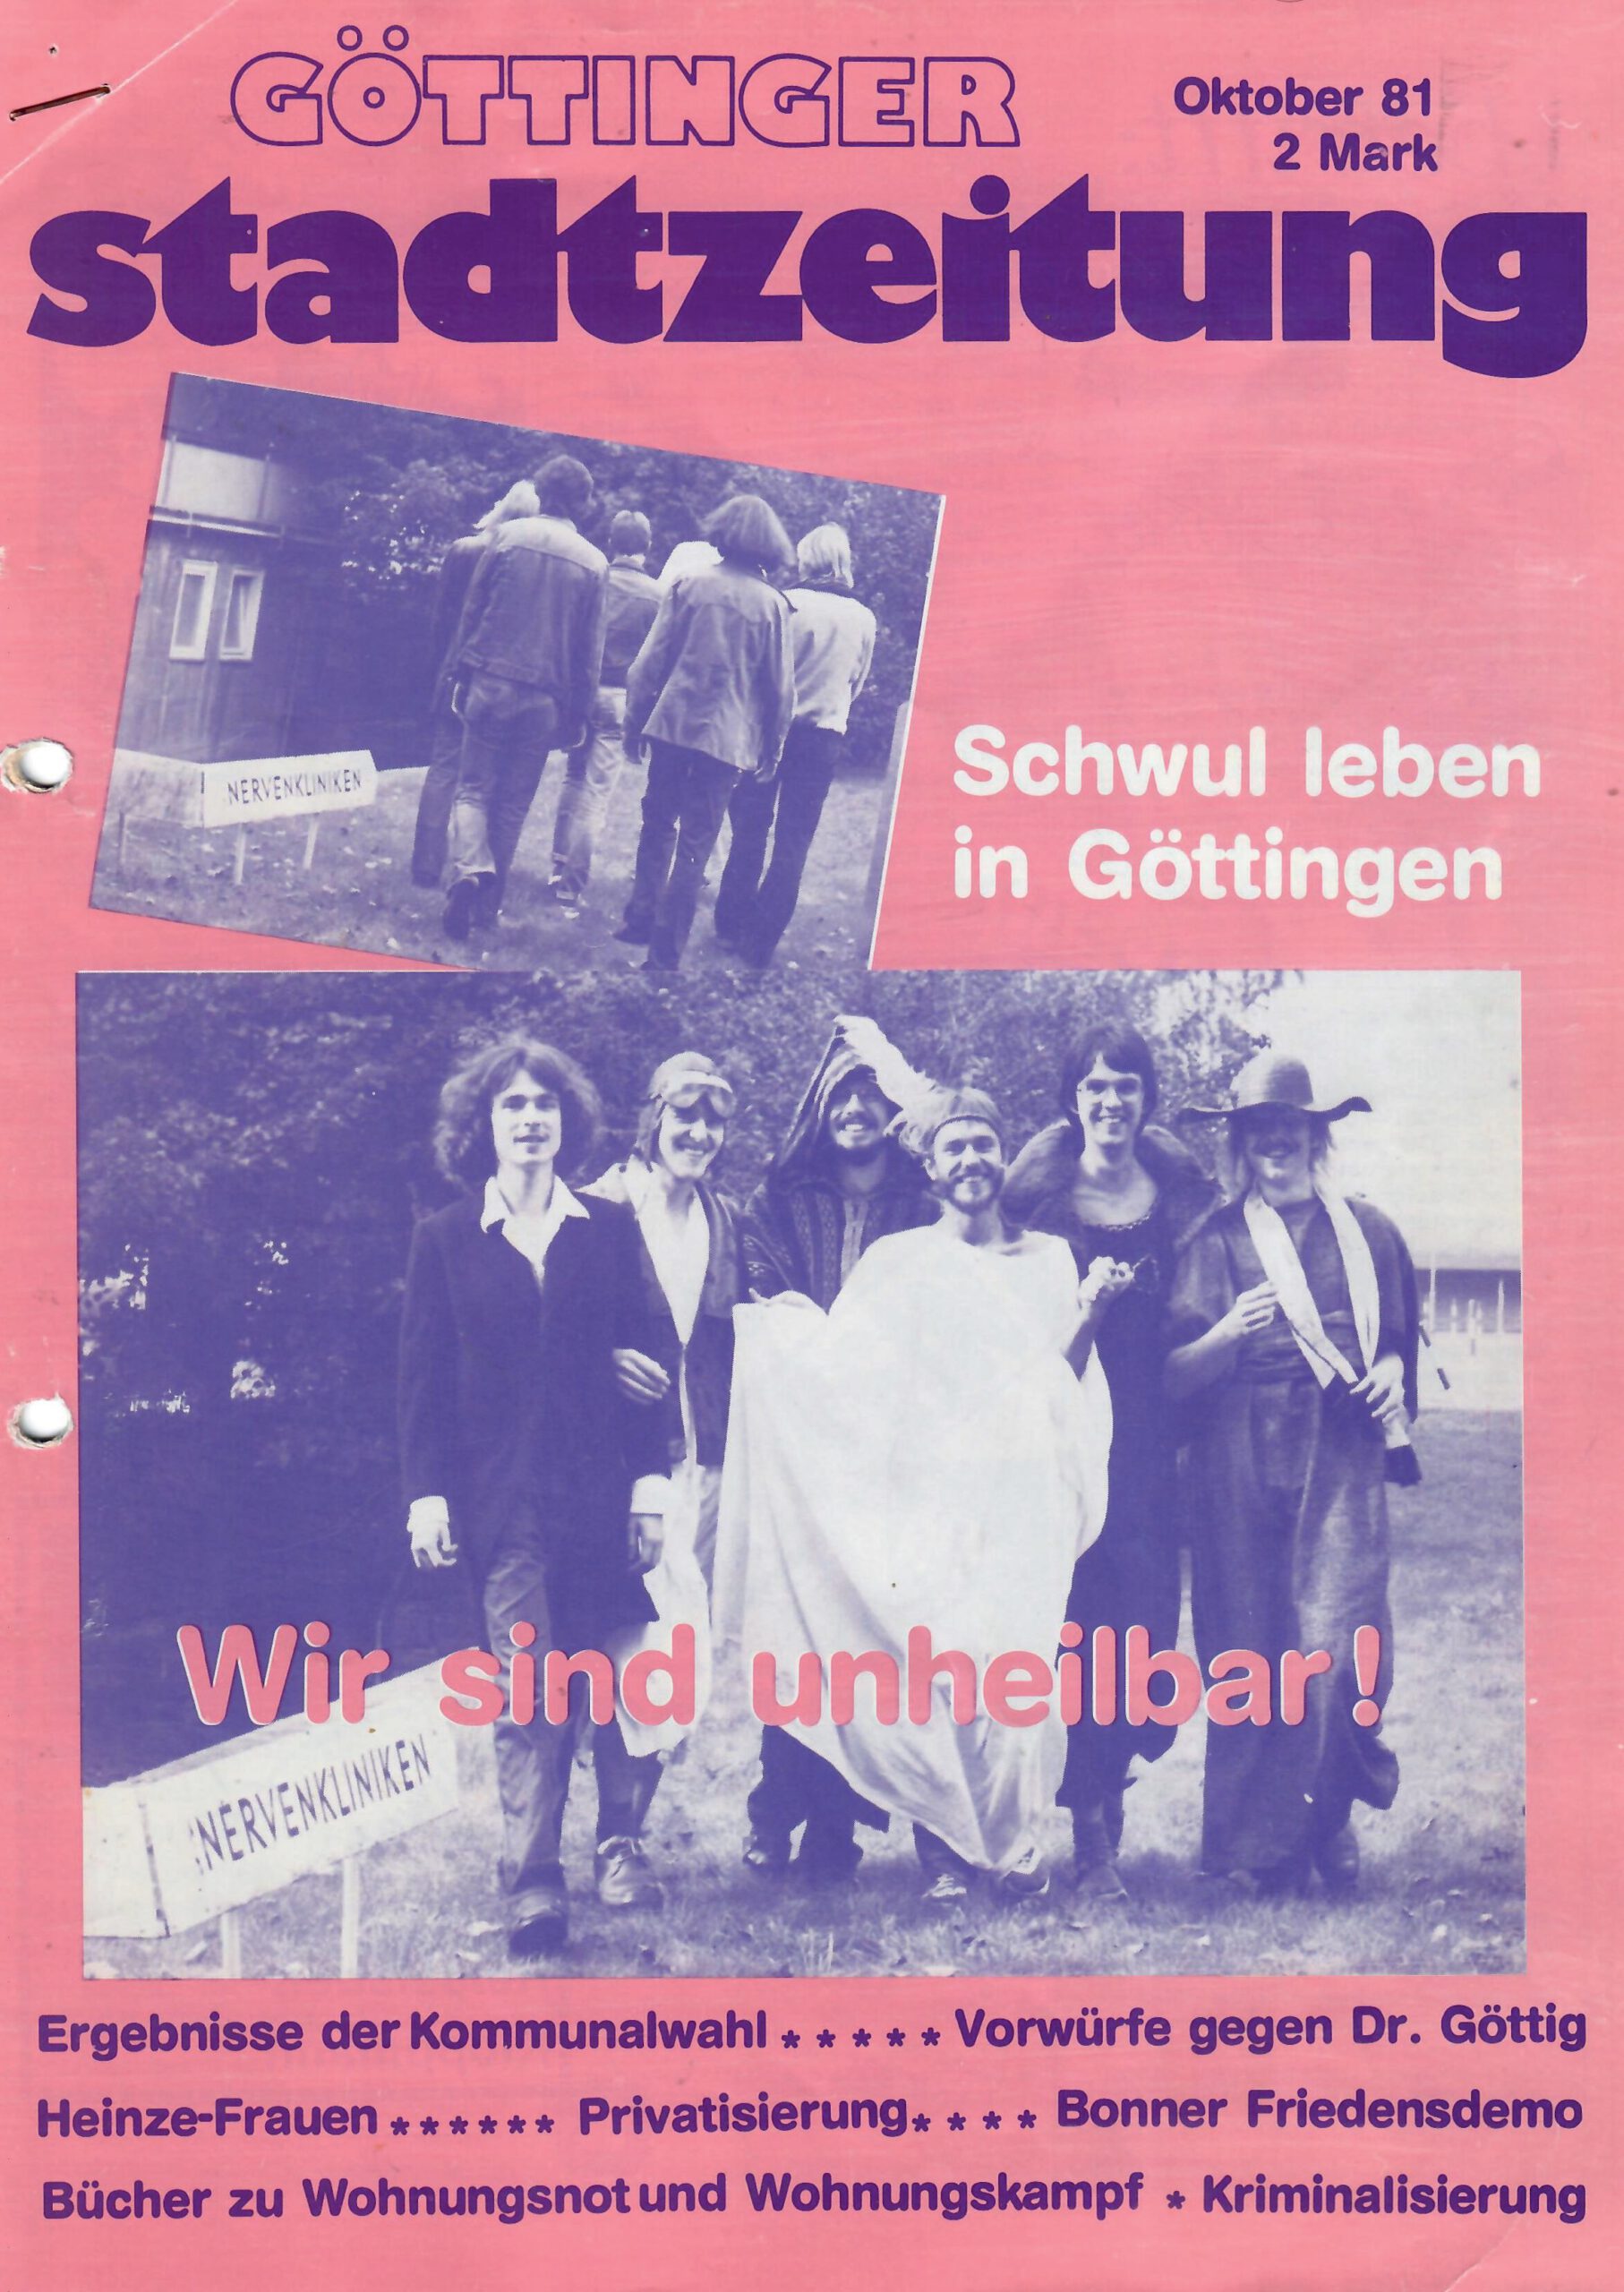 Deckblatt der Göttinger Stadtzeitung von Oktober 1981 (Queeres Archiv Göttingen)